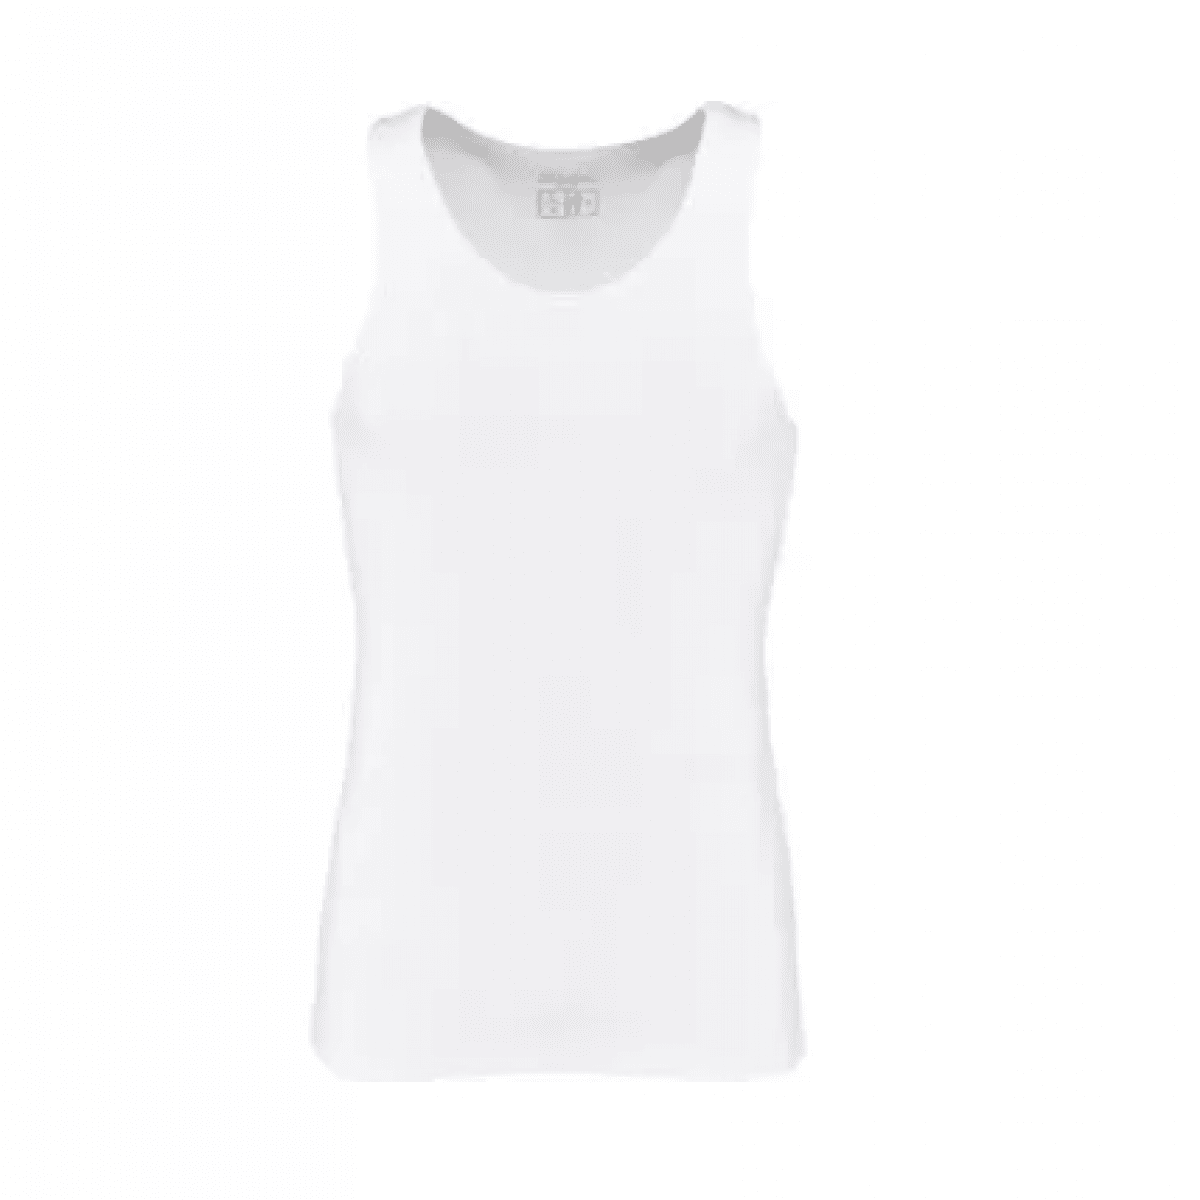 GK/KW13104875054 Biele tričko L, 2 ks